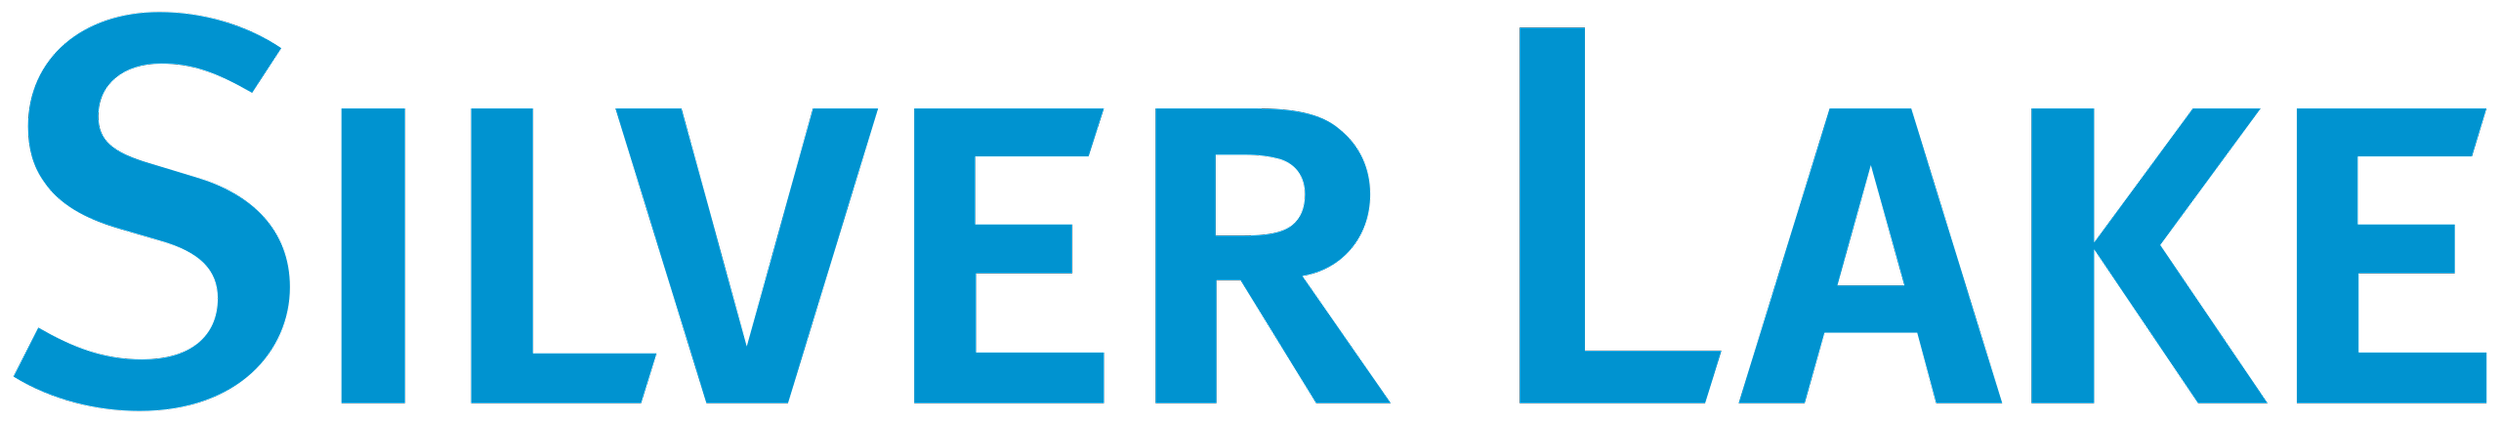 Silver_Lake_(Unternehmen)_logo.svg.png